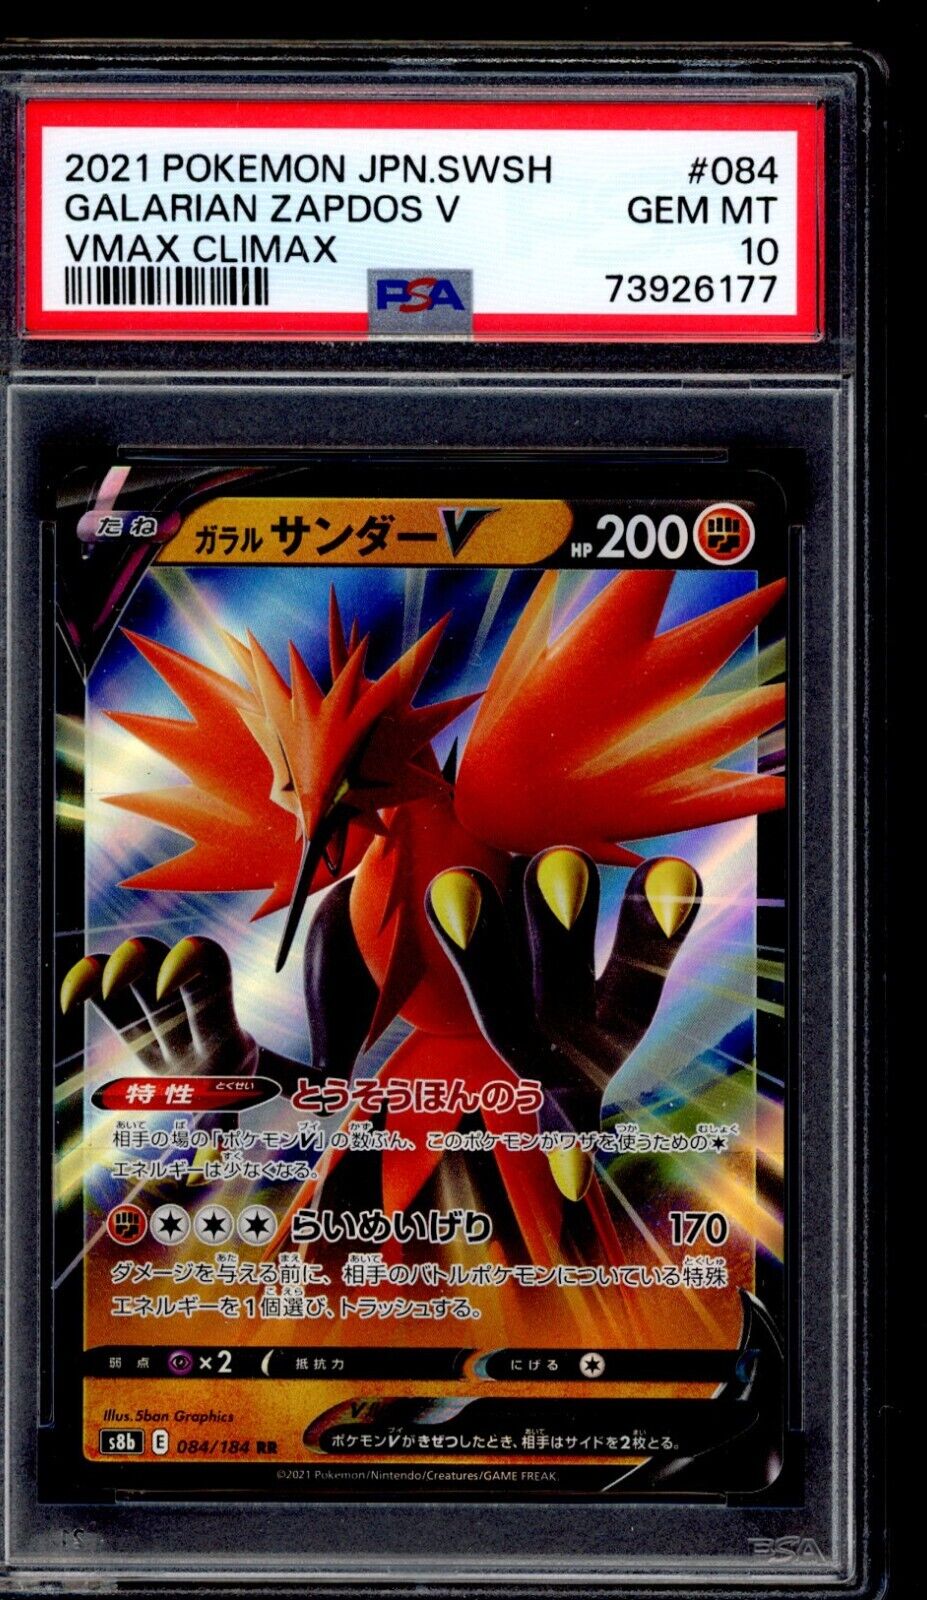 PSA 10 Galarian Zapdos V 2021 Pokemon Card 084/184 Vmax Climax